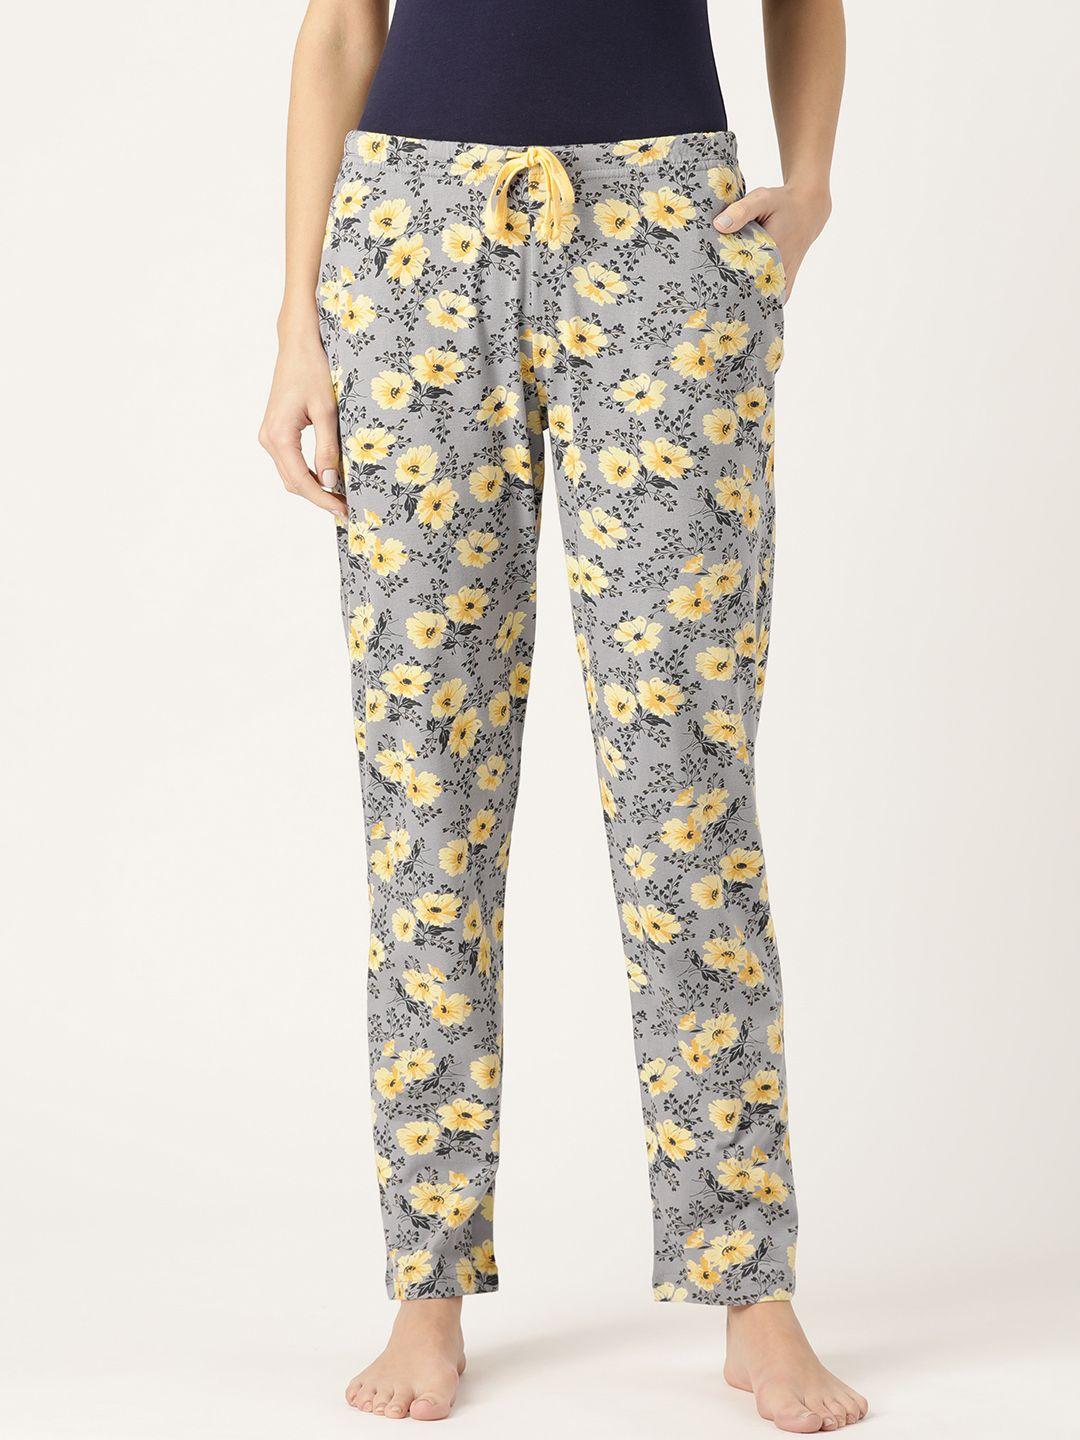 kanvin-women-lime-grey-&-yellow-floral-print-lounge-pants